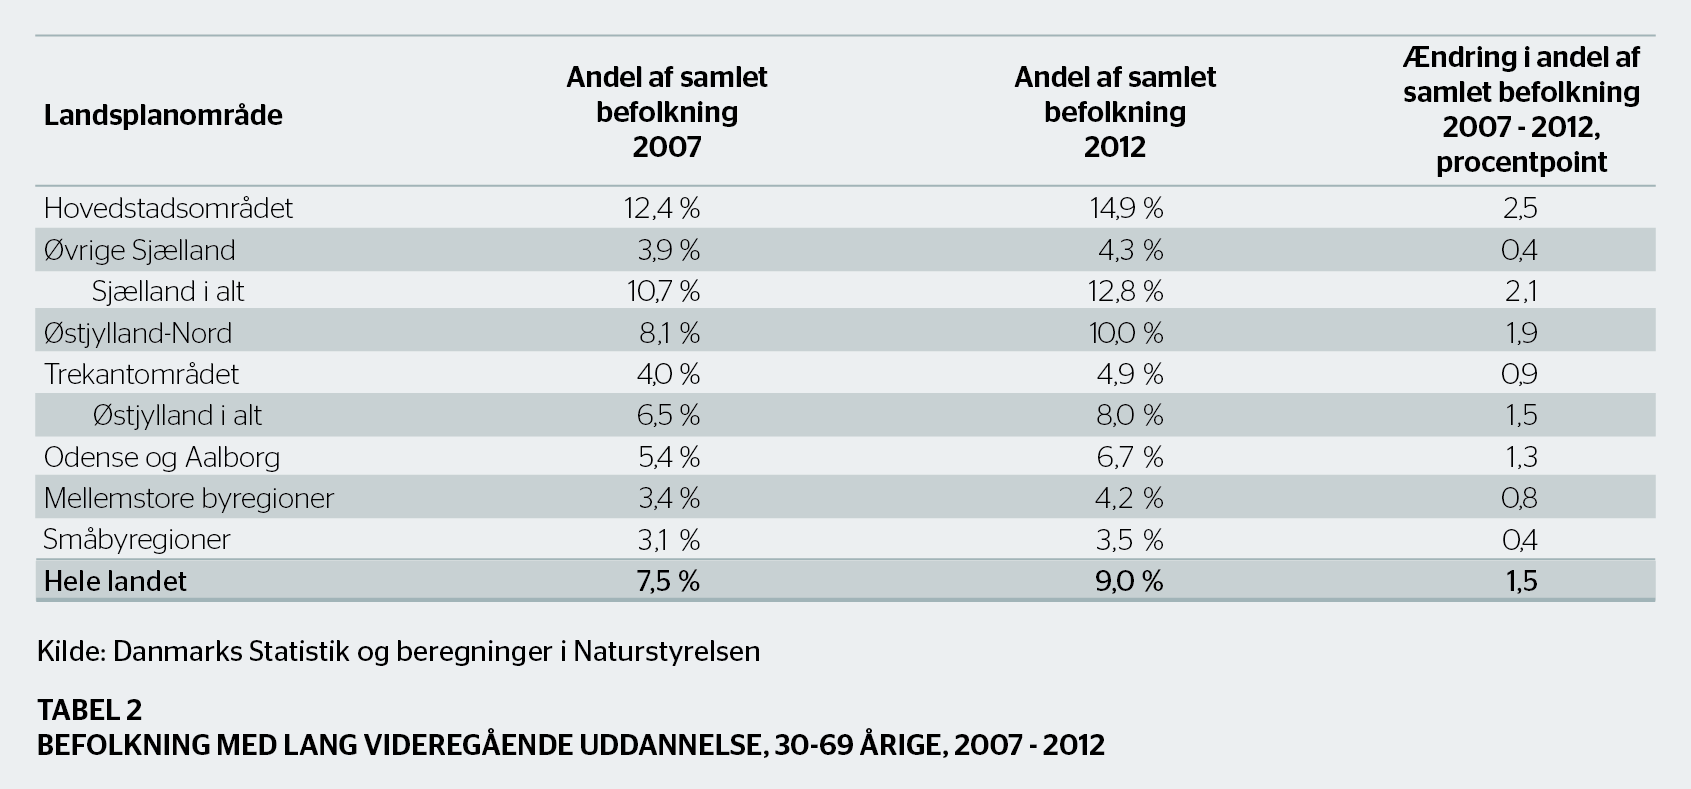 2000 til 2012 og for de værst ramte kommuner Kerteminde og Struer samt øerne Læsø og Langeland, har nedgangen været større end 18 pct.